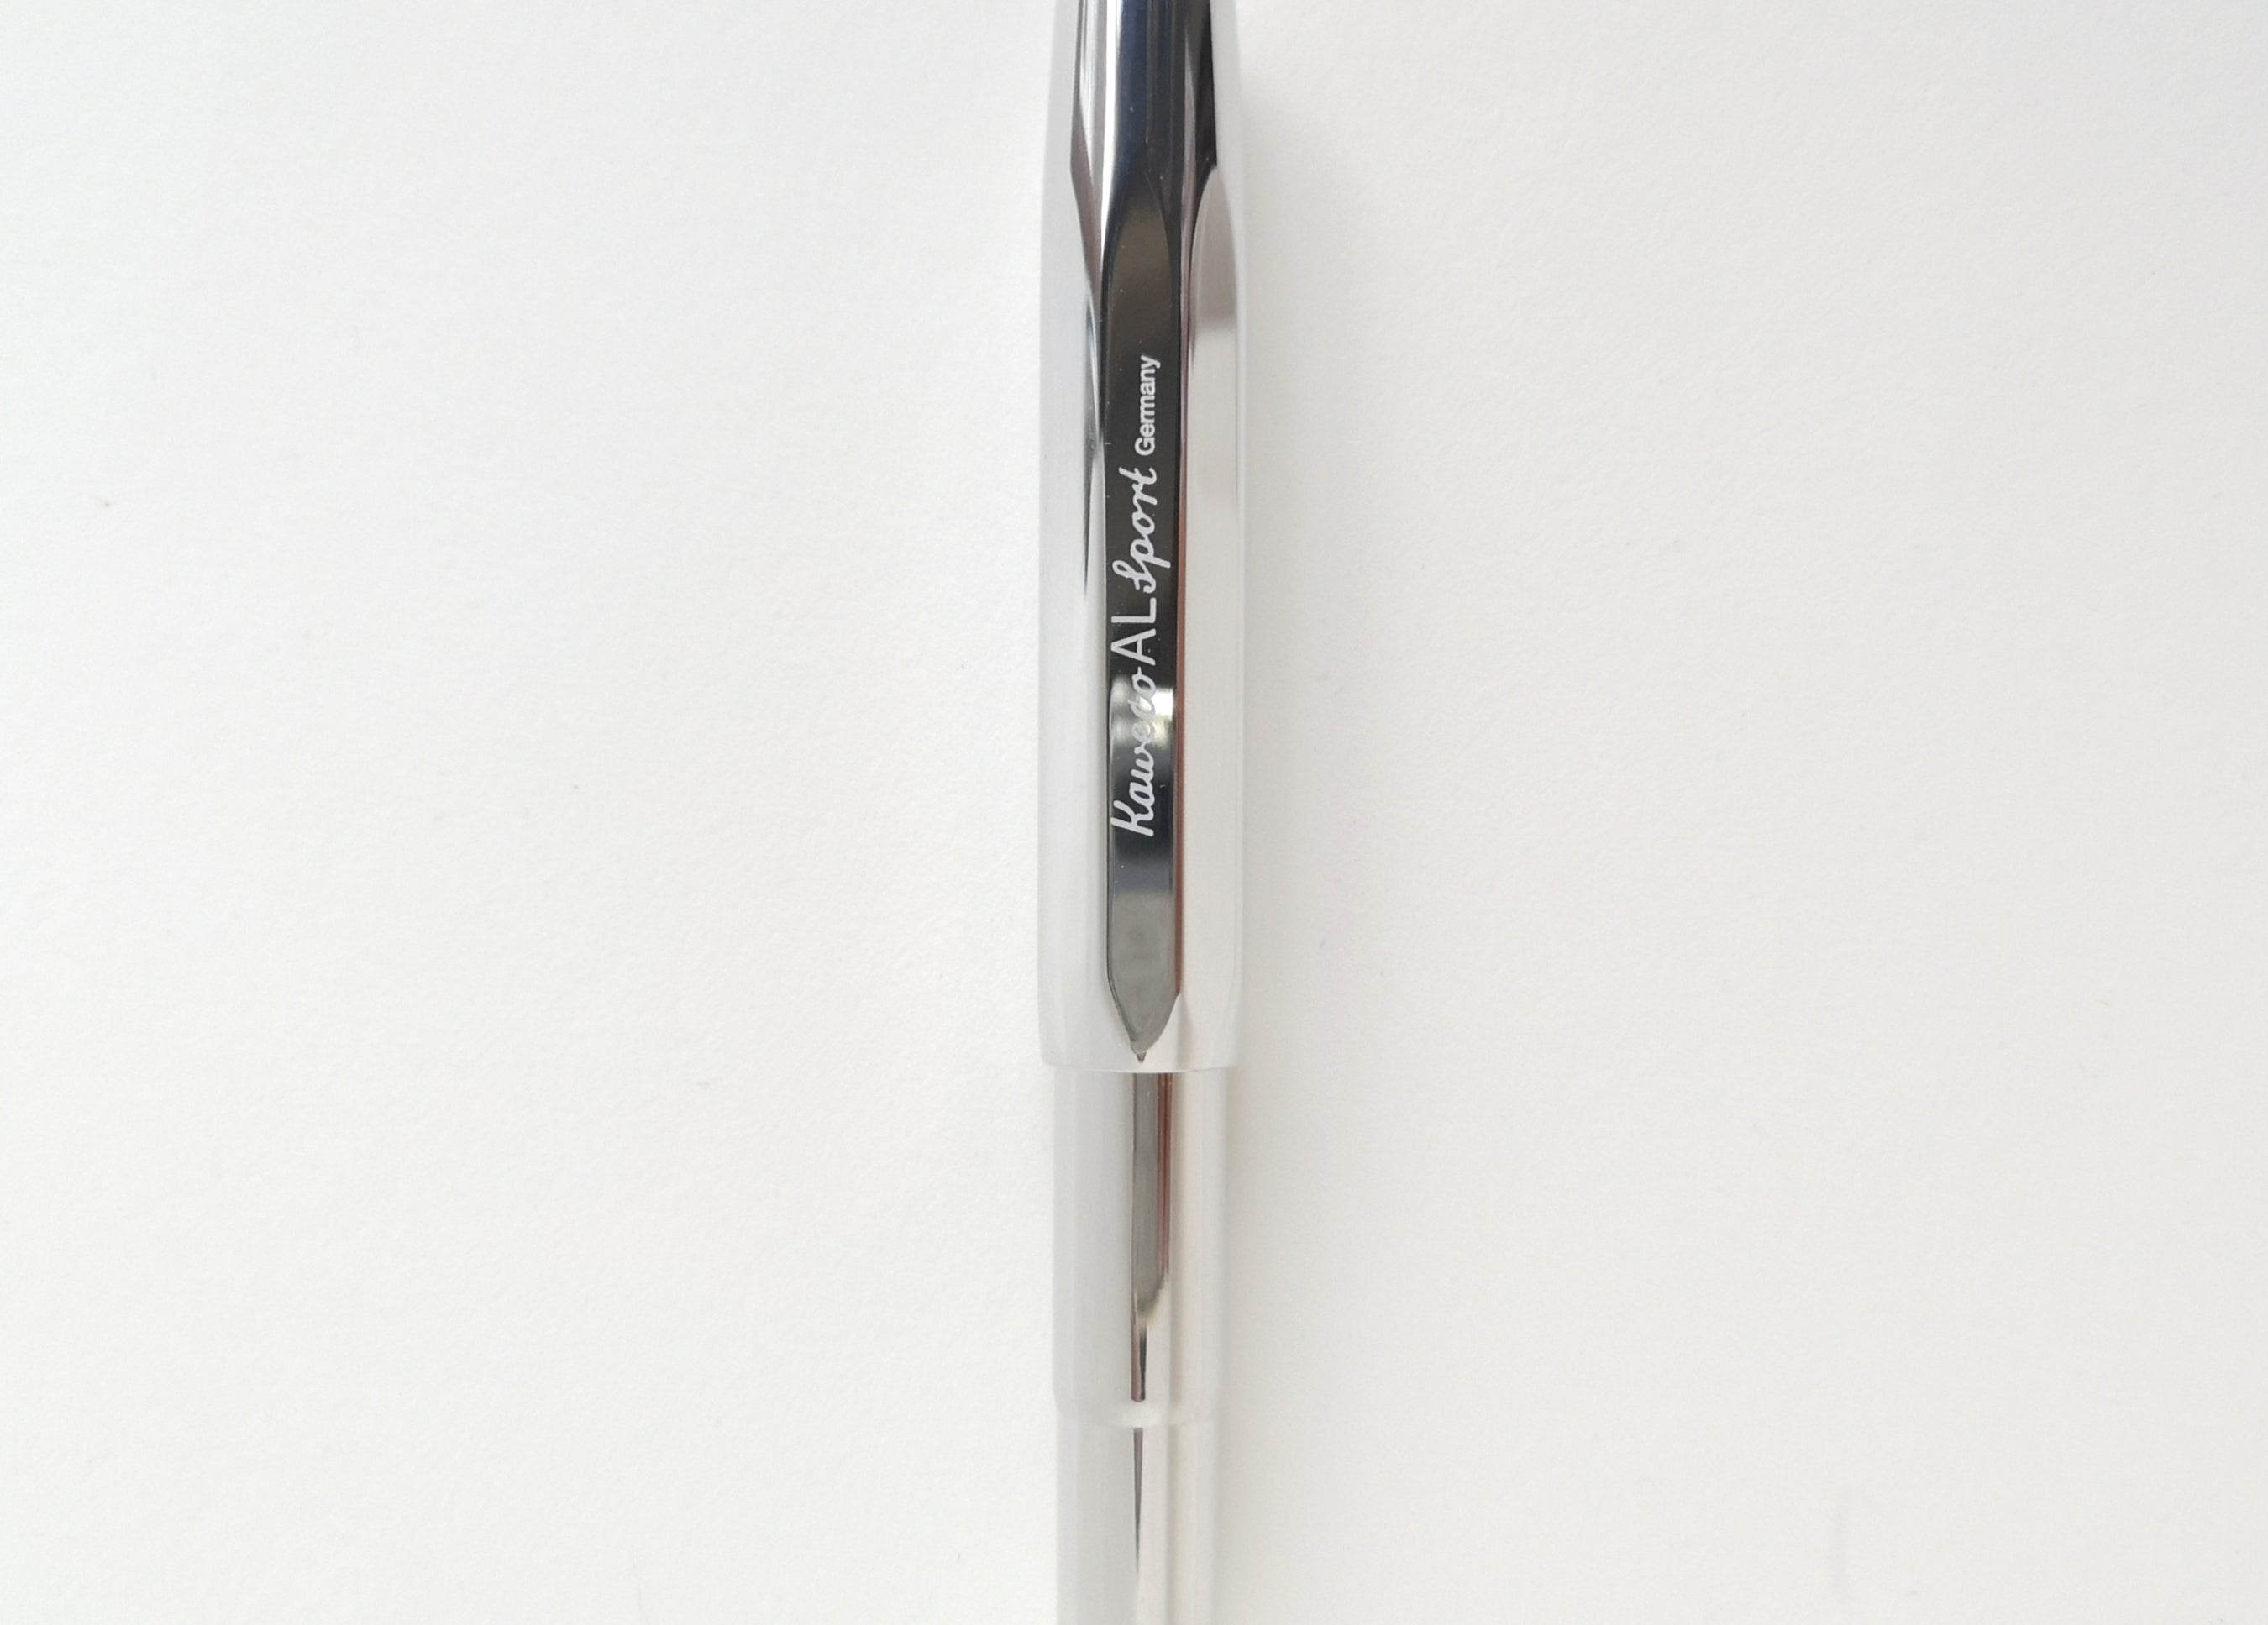 Shiny Aluminium Kaweco Sport Fountain Pen with cap on